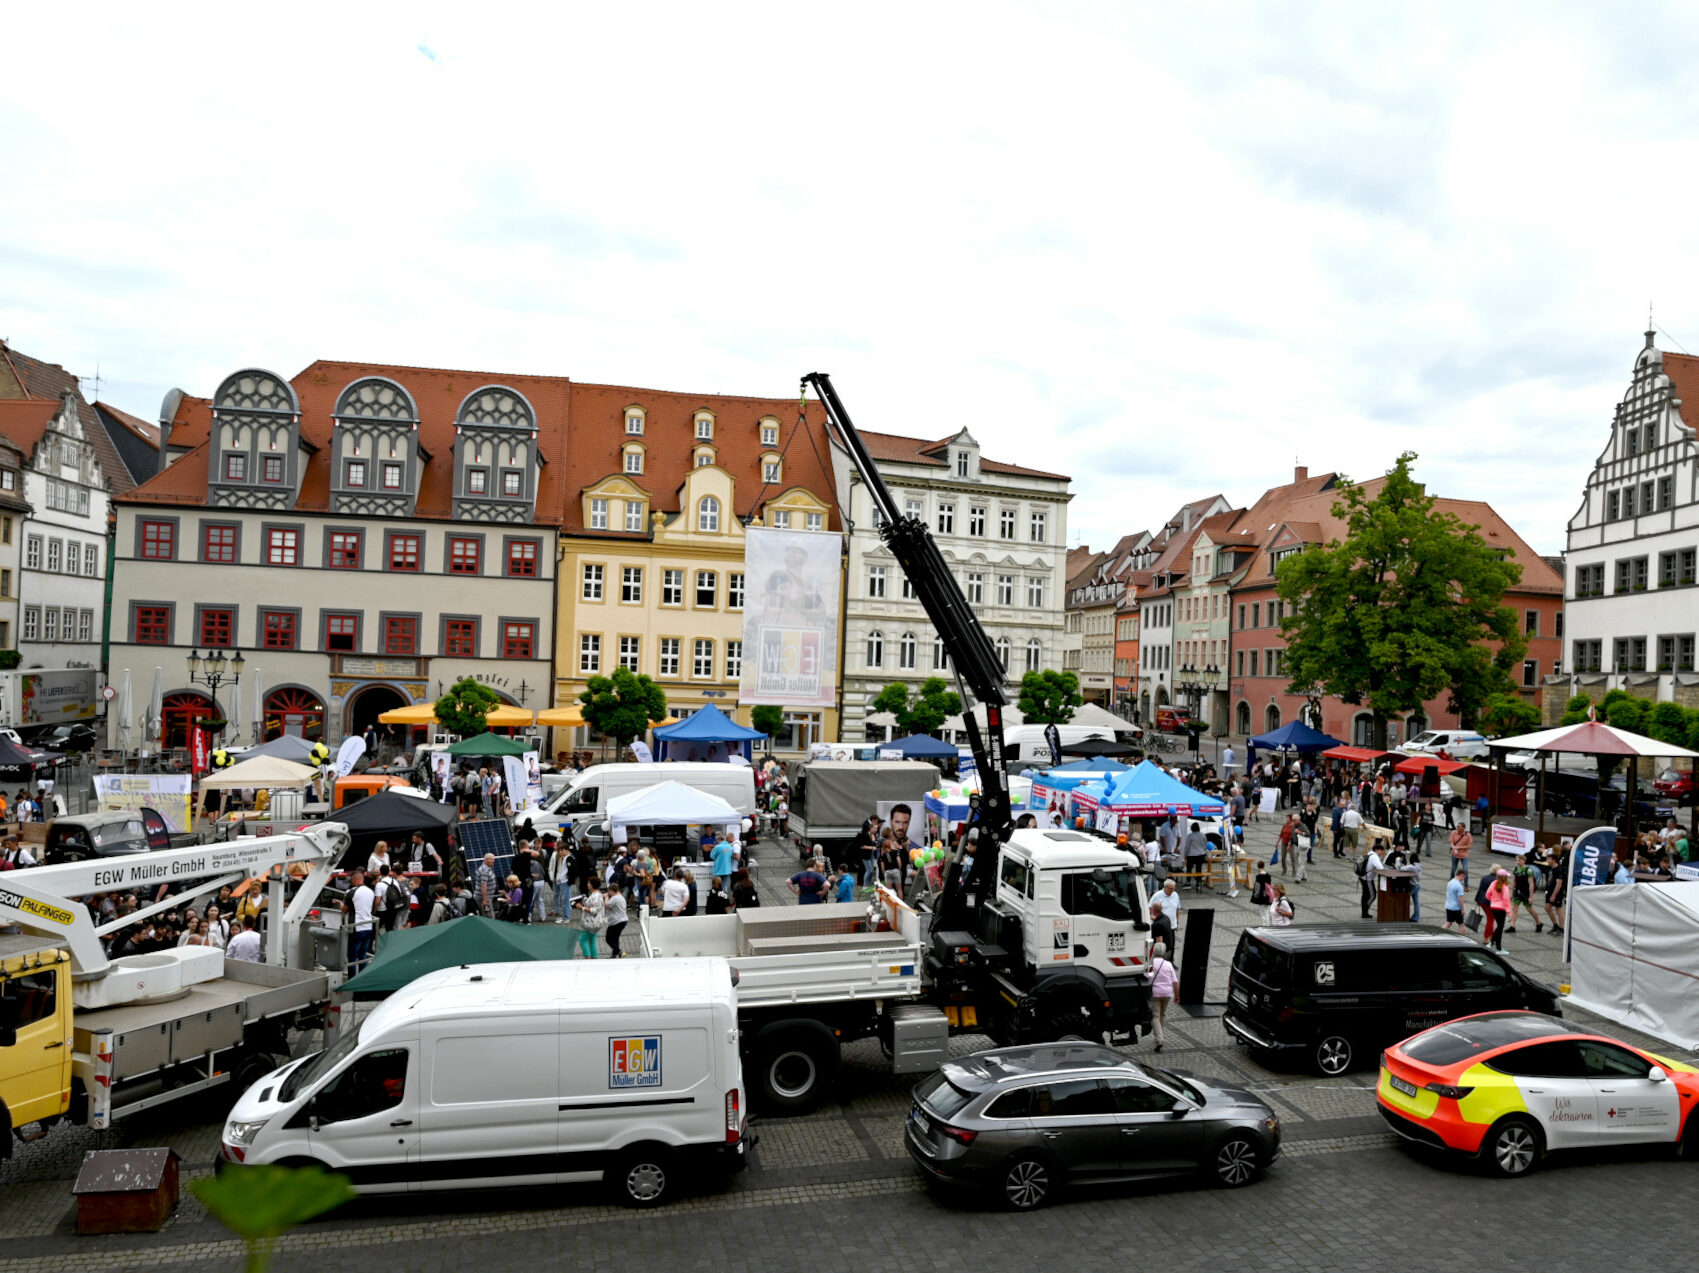 Aktionstag "Handwerk zum Anfassen" auf dem Markt in Naumburg